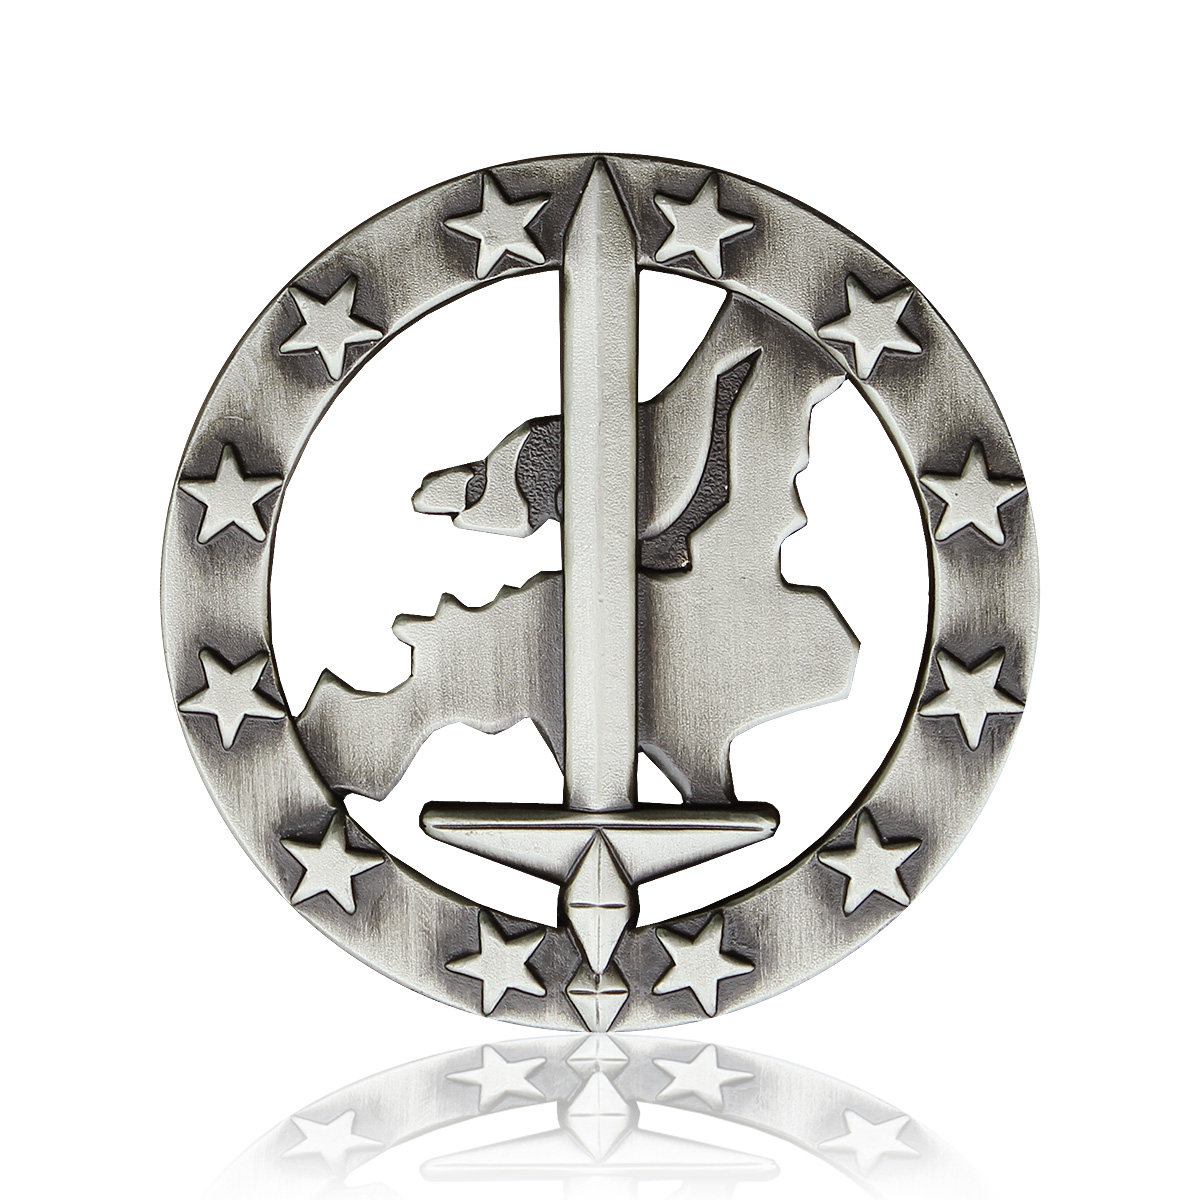 Bundeswehr Verbandsabzeichen Eurokorps gewebt Divisionsabzeichen